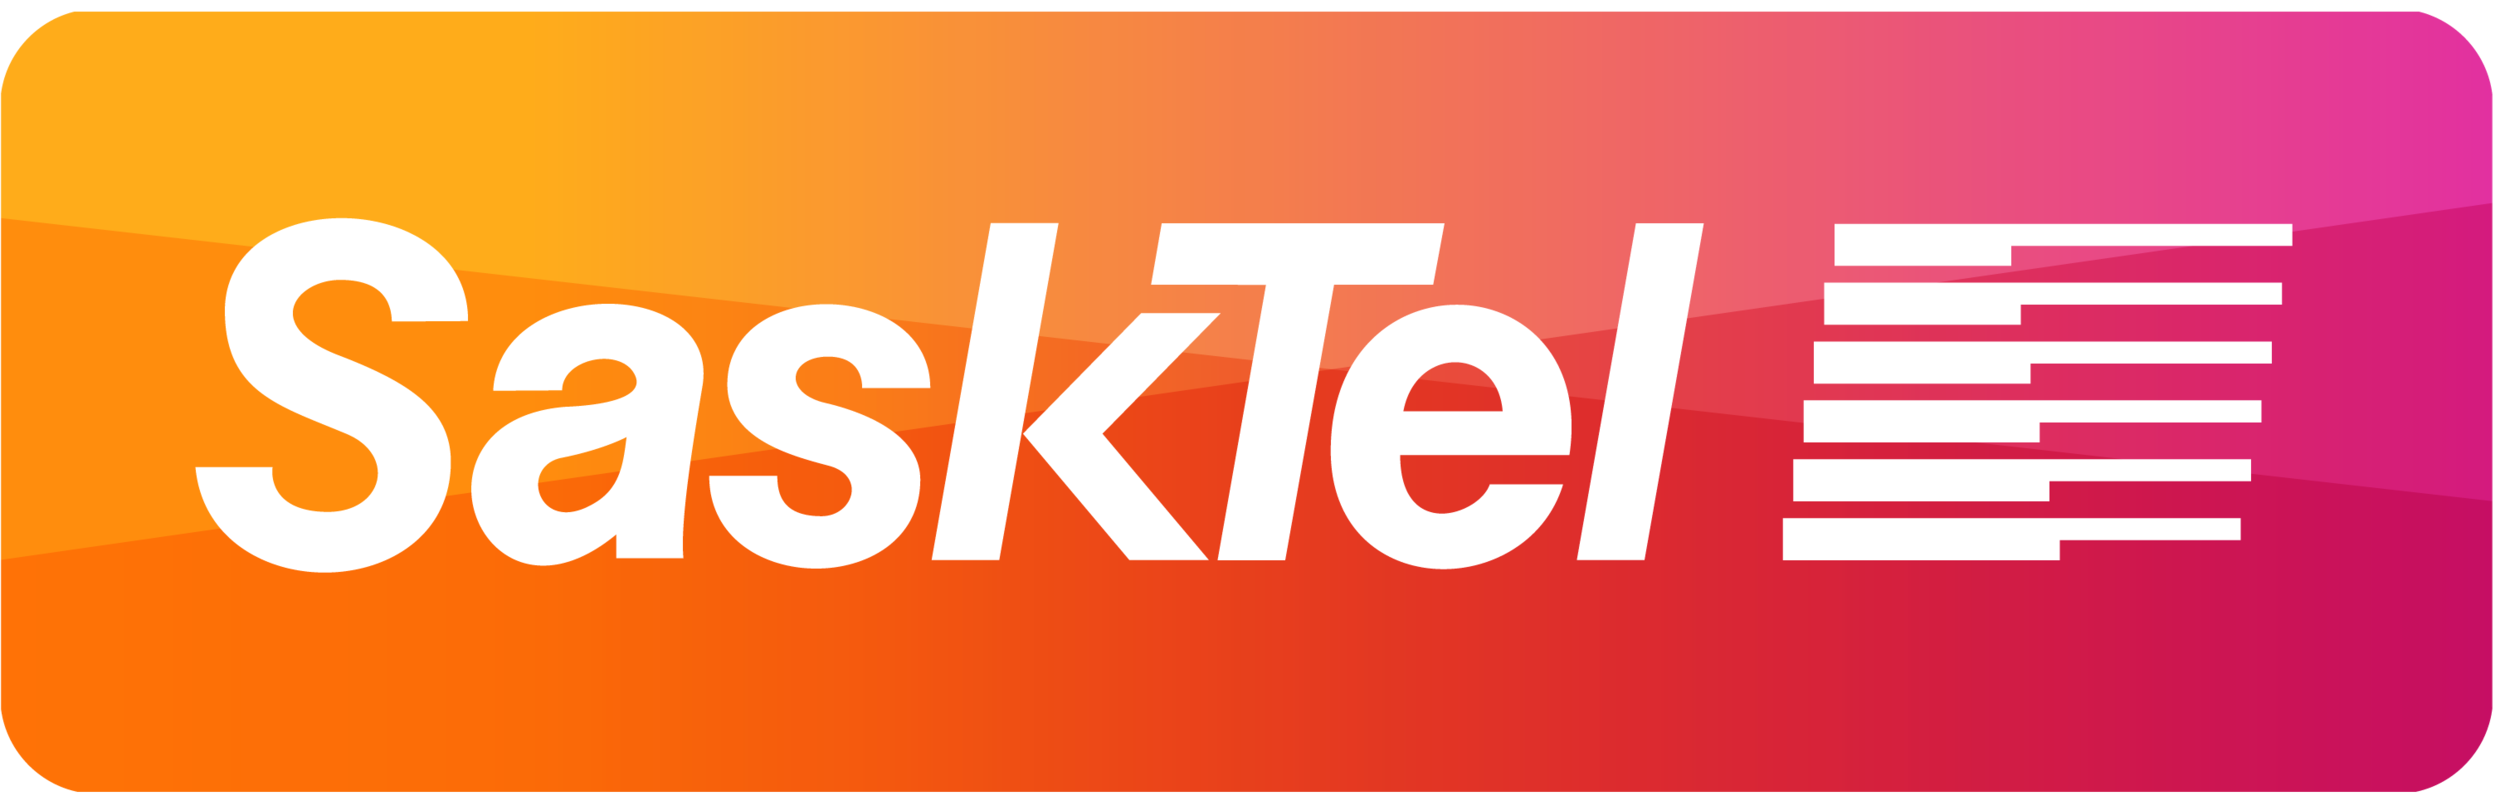 SaskTel-Sponsorship_withoutWordmrk_RGB_clip.png